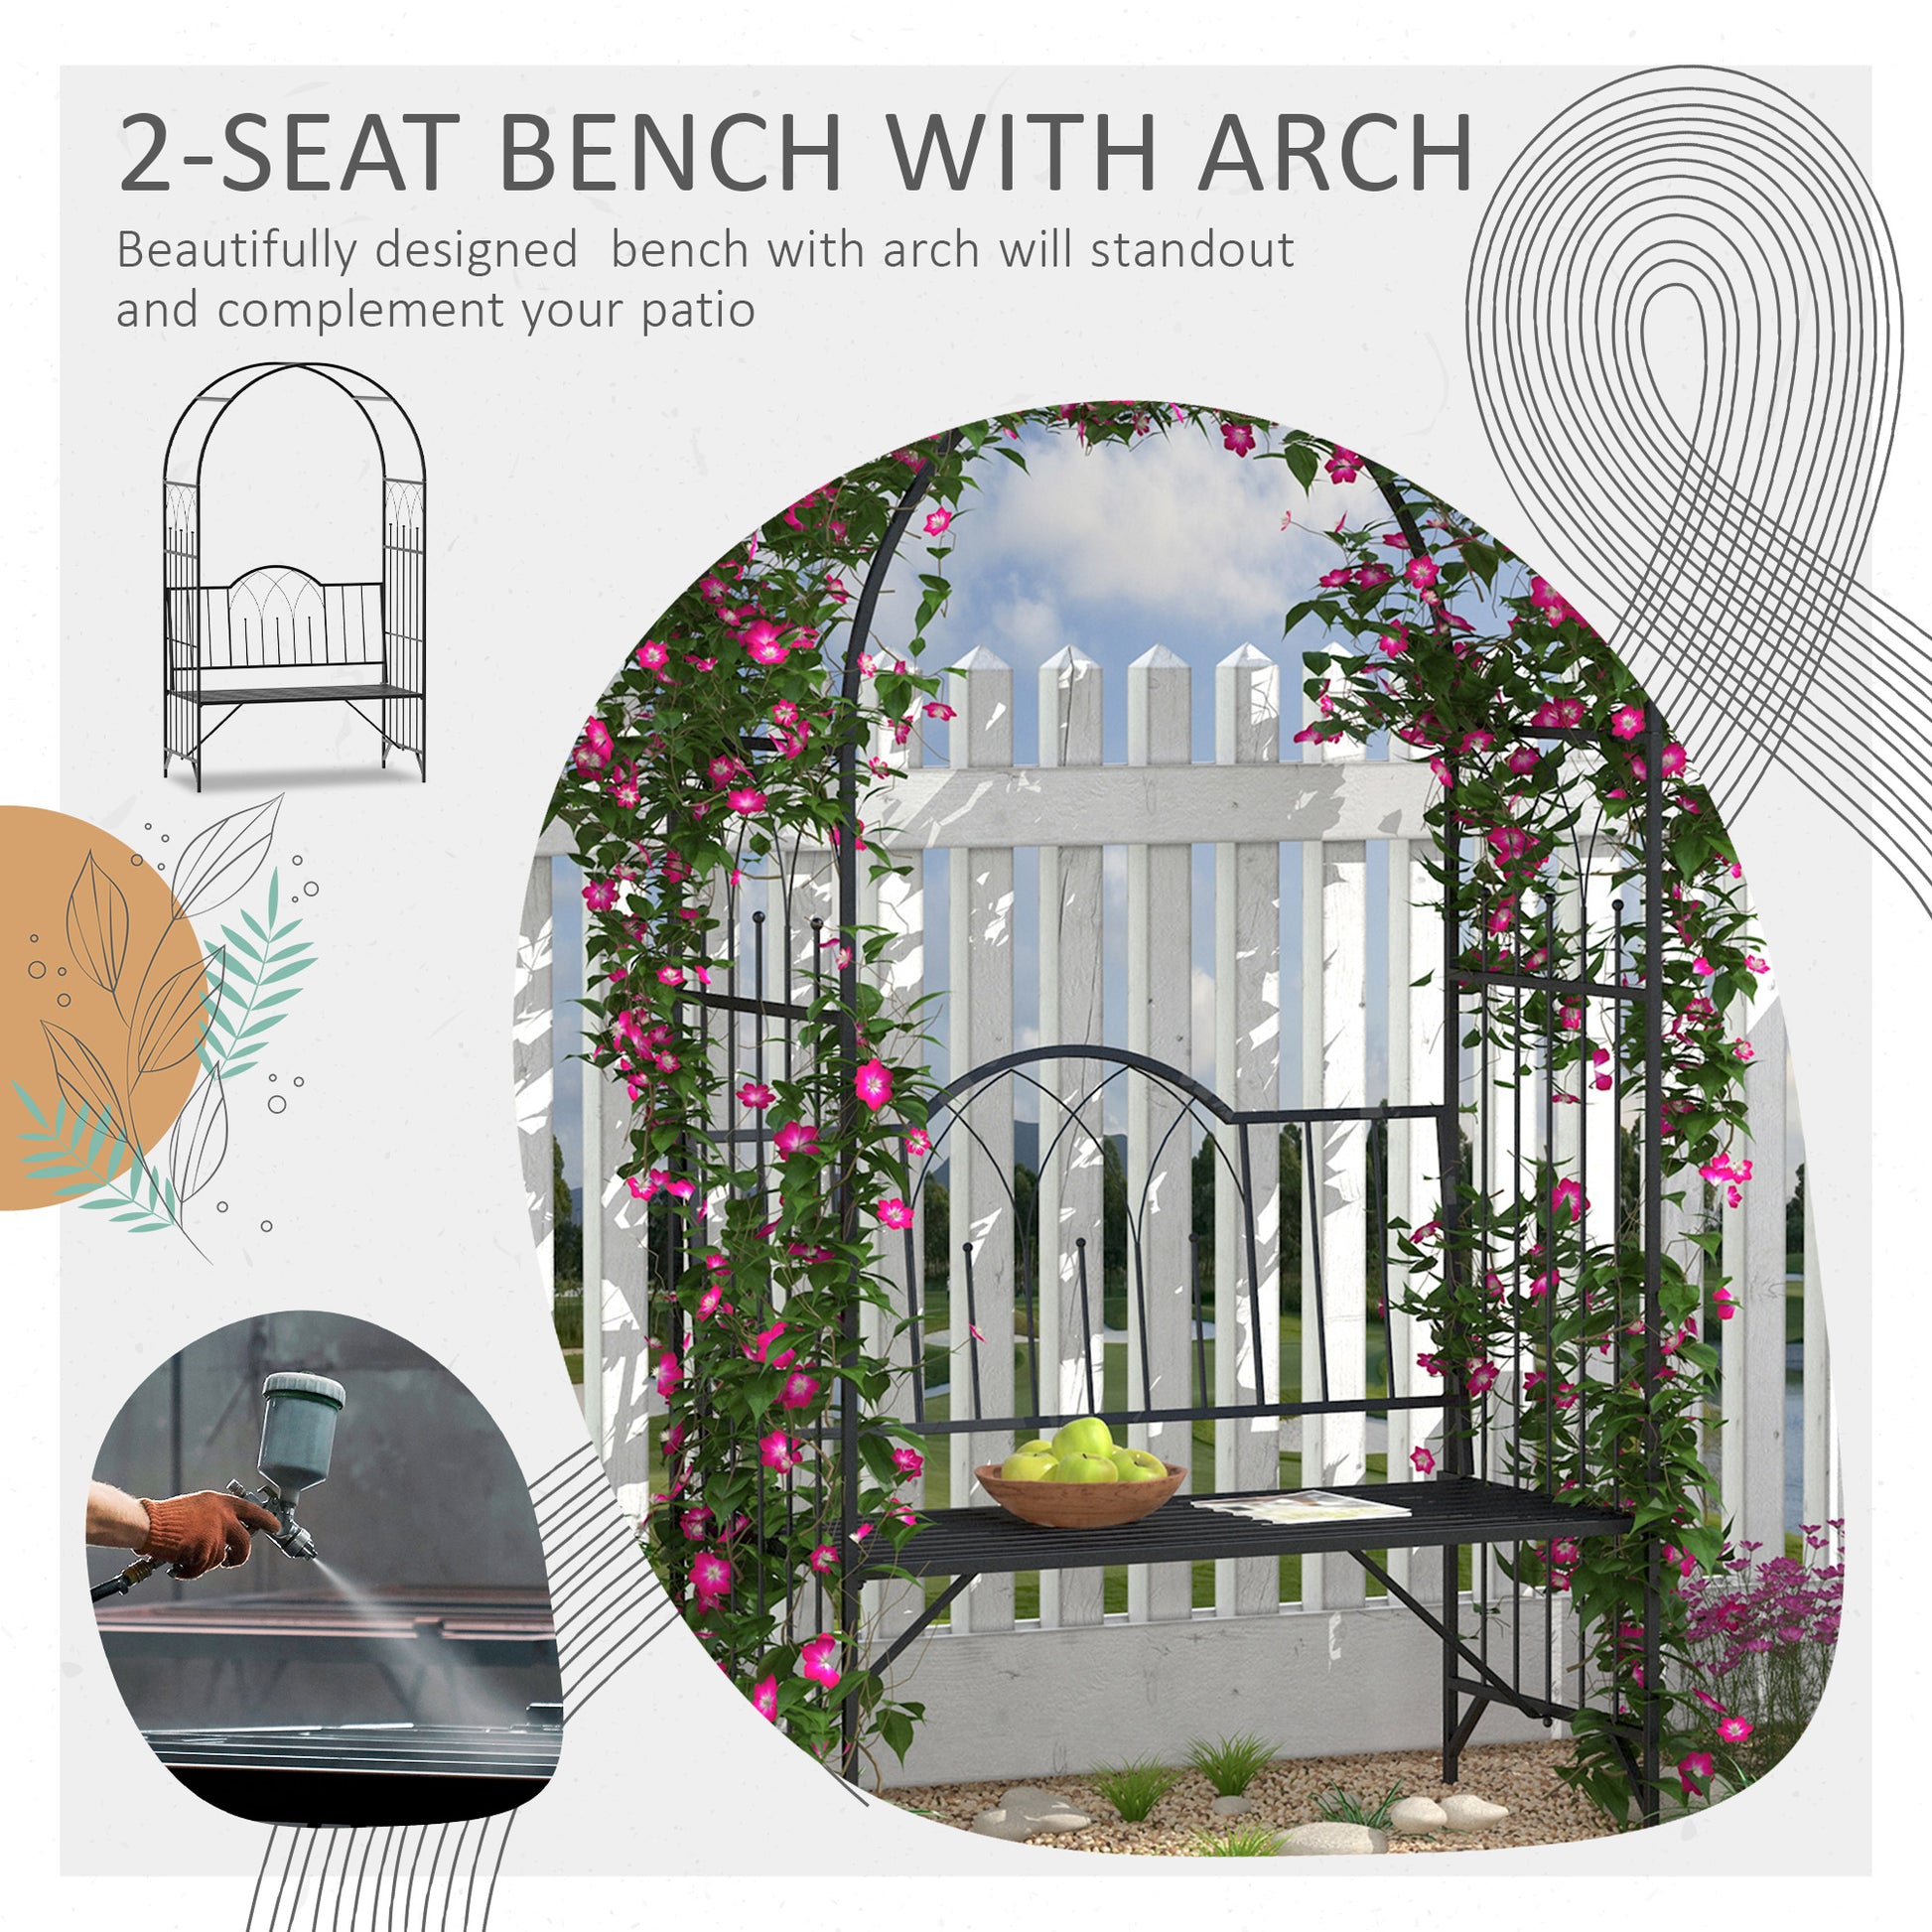 43" Garden Arbor Bench Trellis for Vines Climbing Plant Outdoor Decor Arch- Black - Gallery Canada